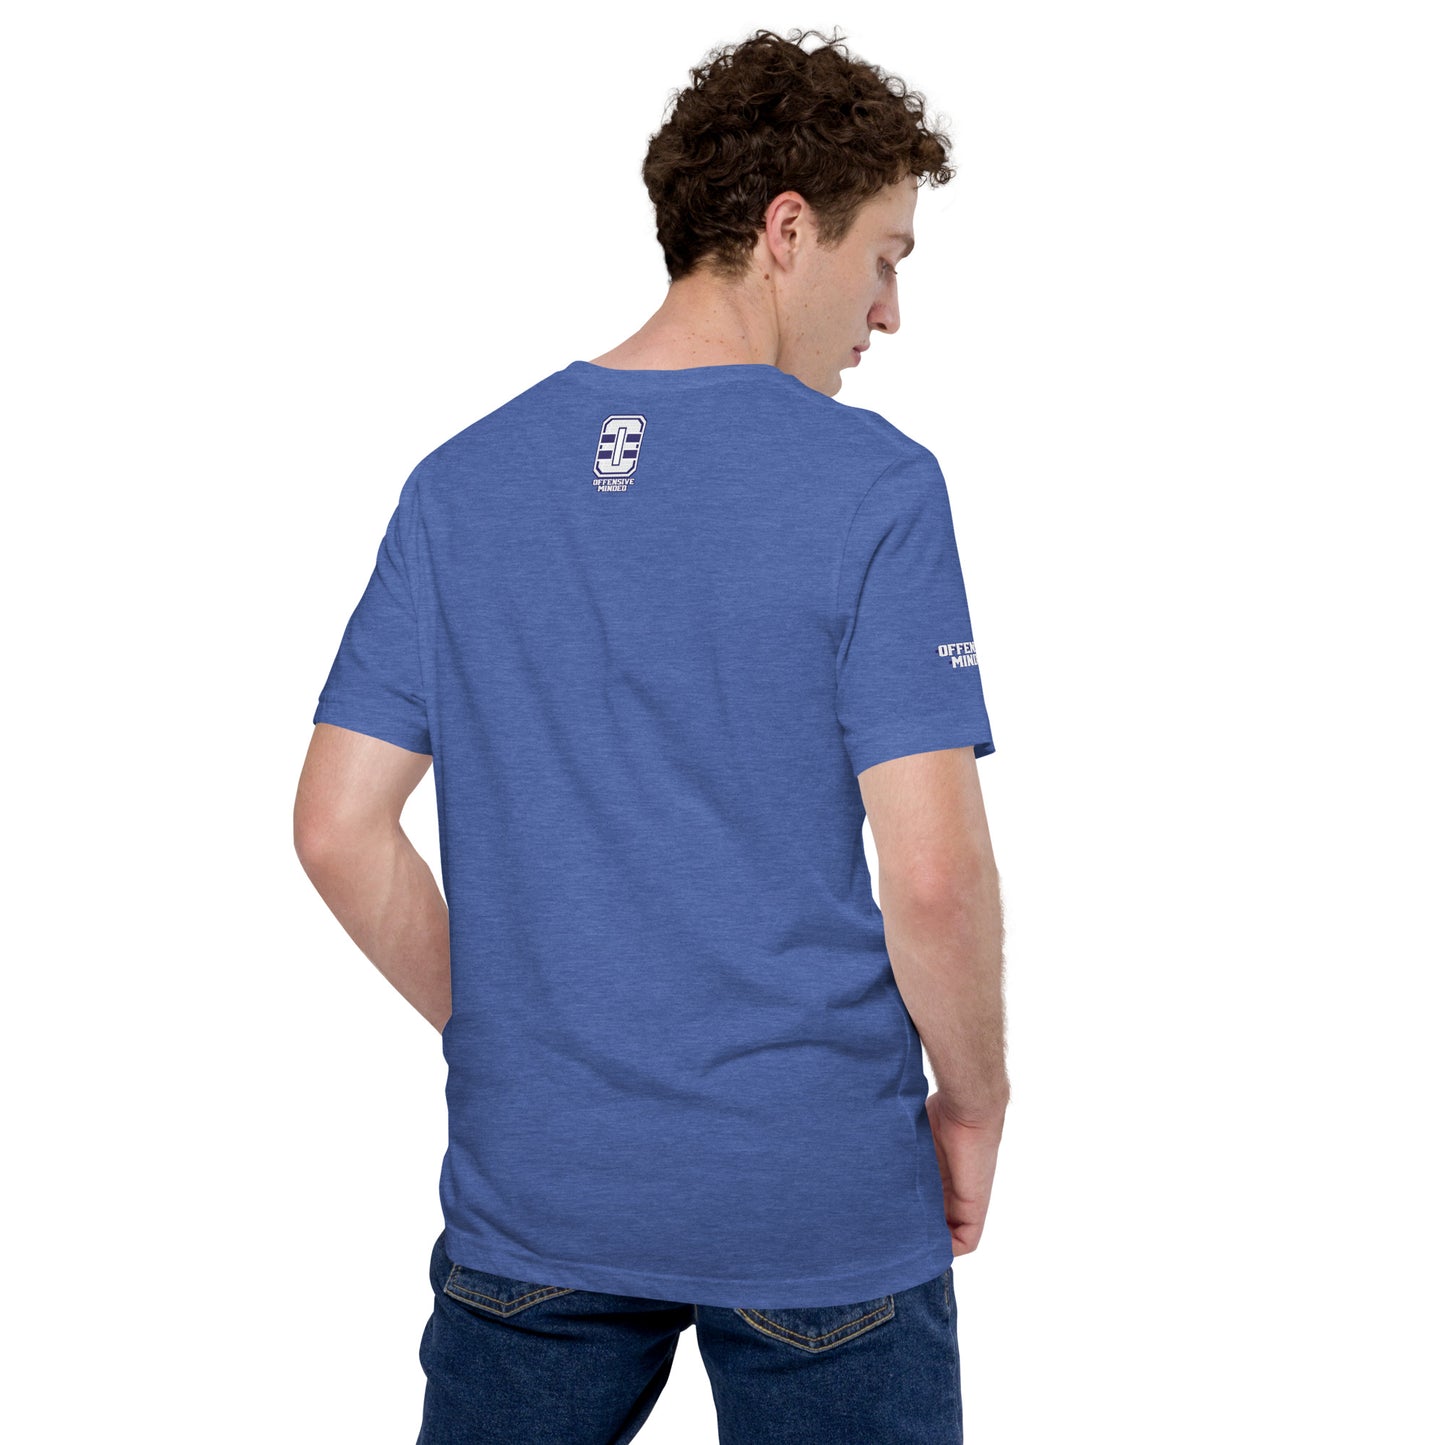 Big Papi Stache Blue Unisex t-shirt